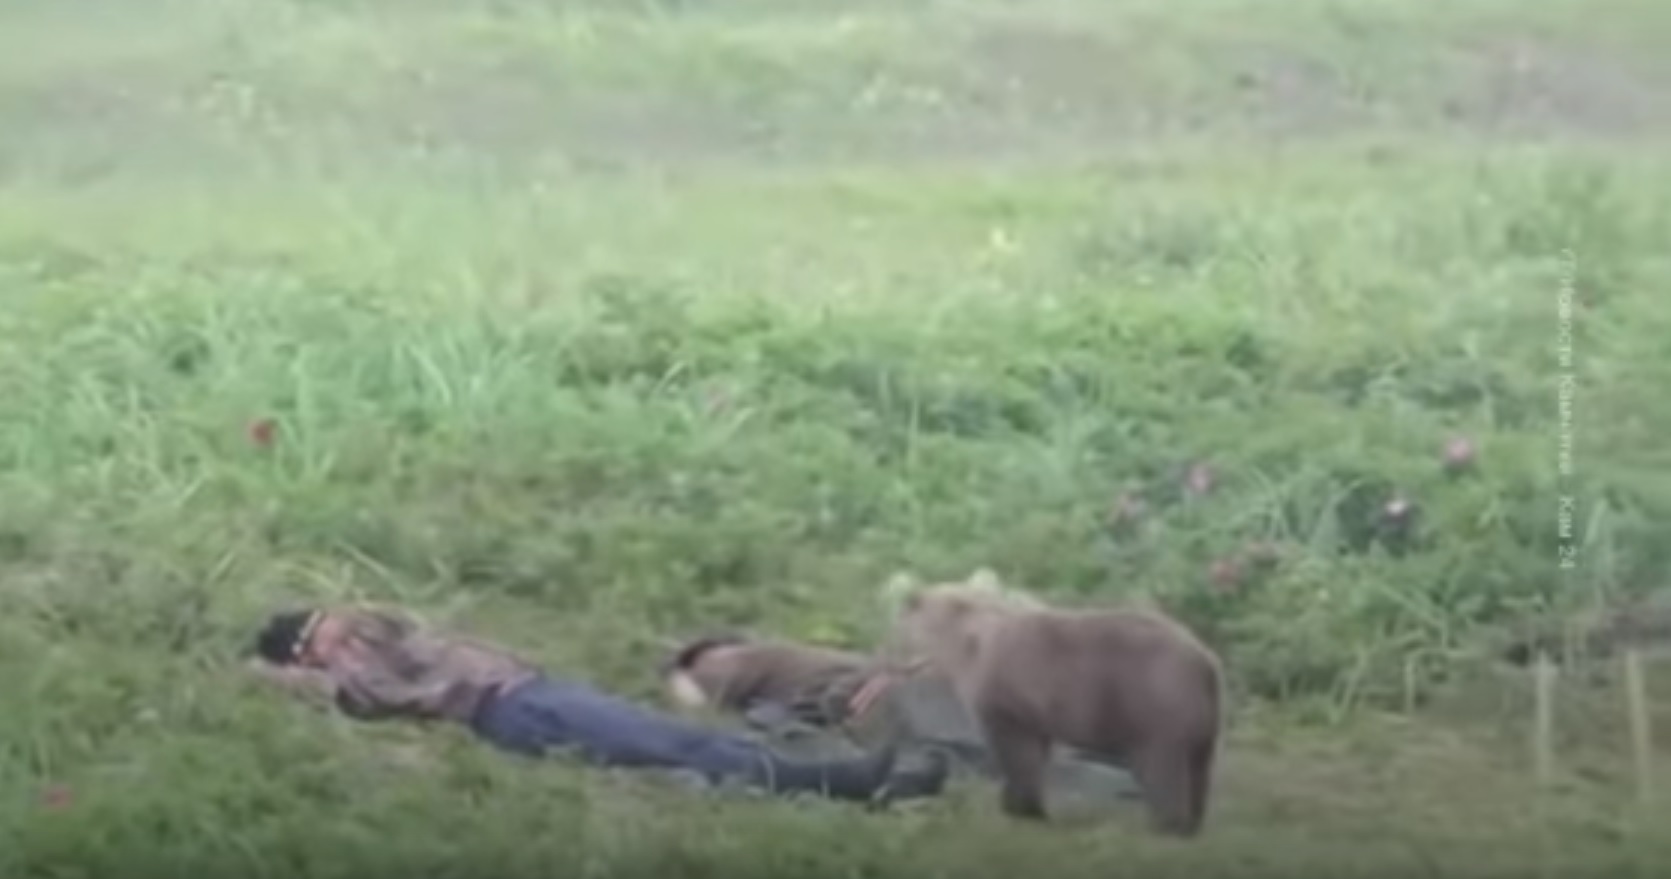 (ВІДЕО) На Камчатці ведмідь розбудив сплячого чоловіка: тільки погляньте на реакцію!